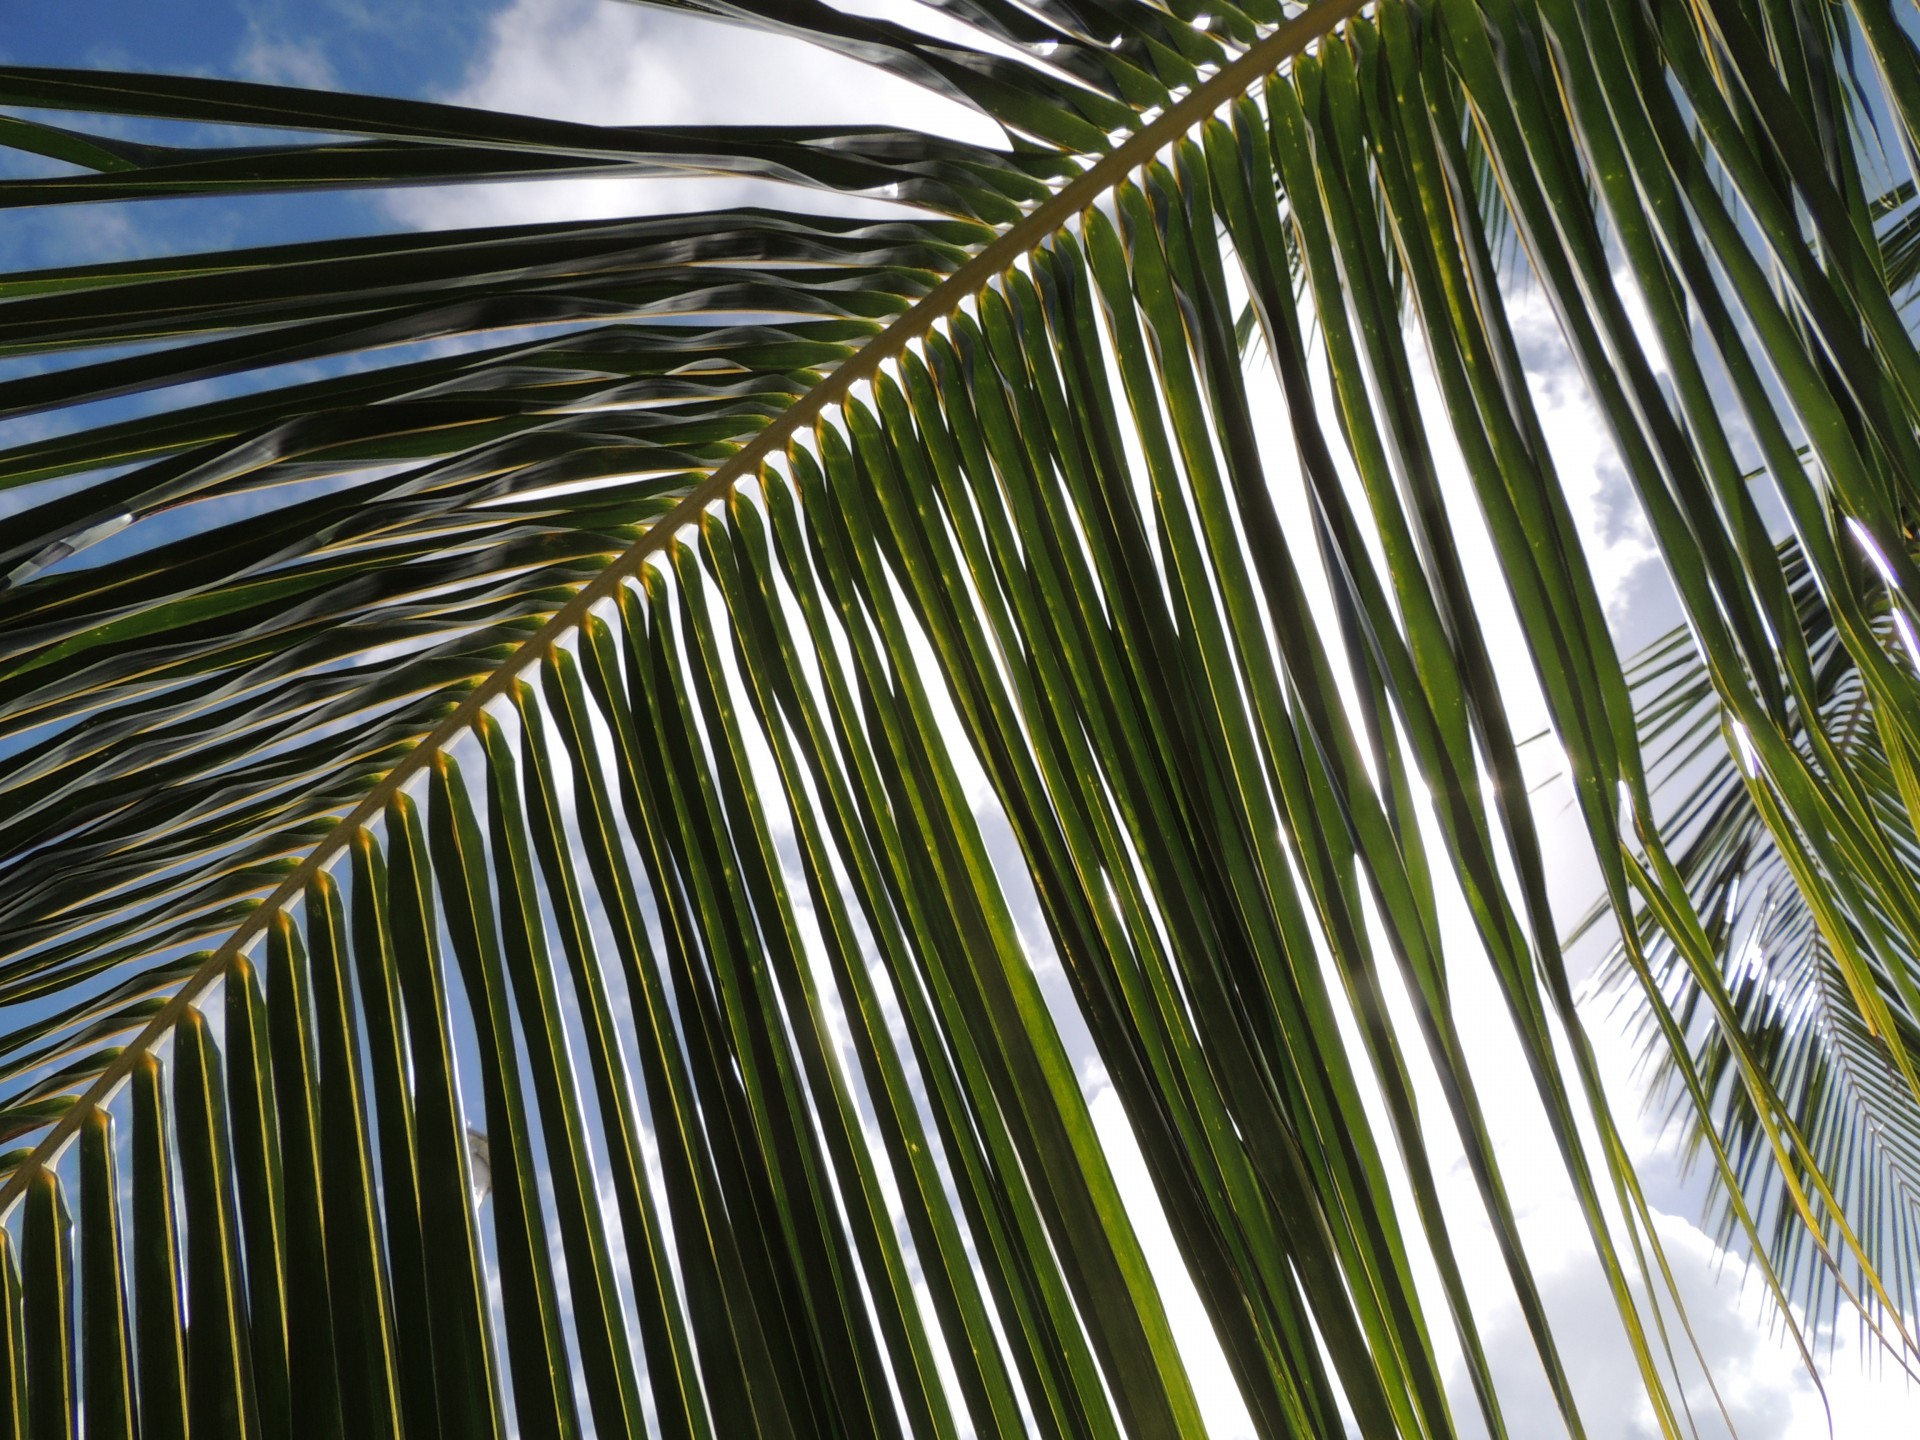 Lumina soarelui prin palmier